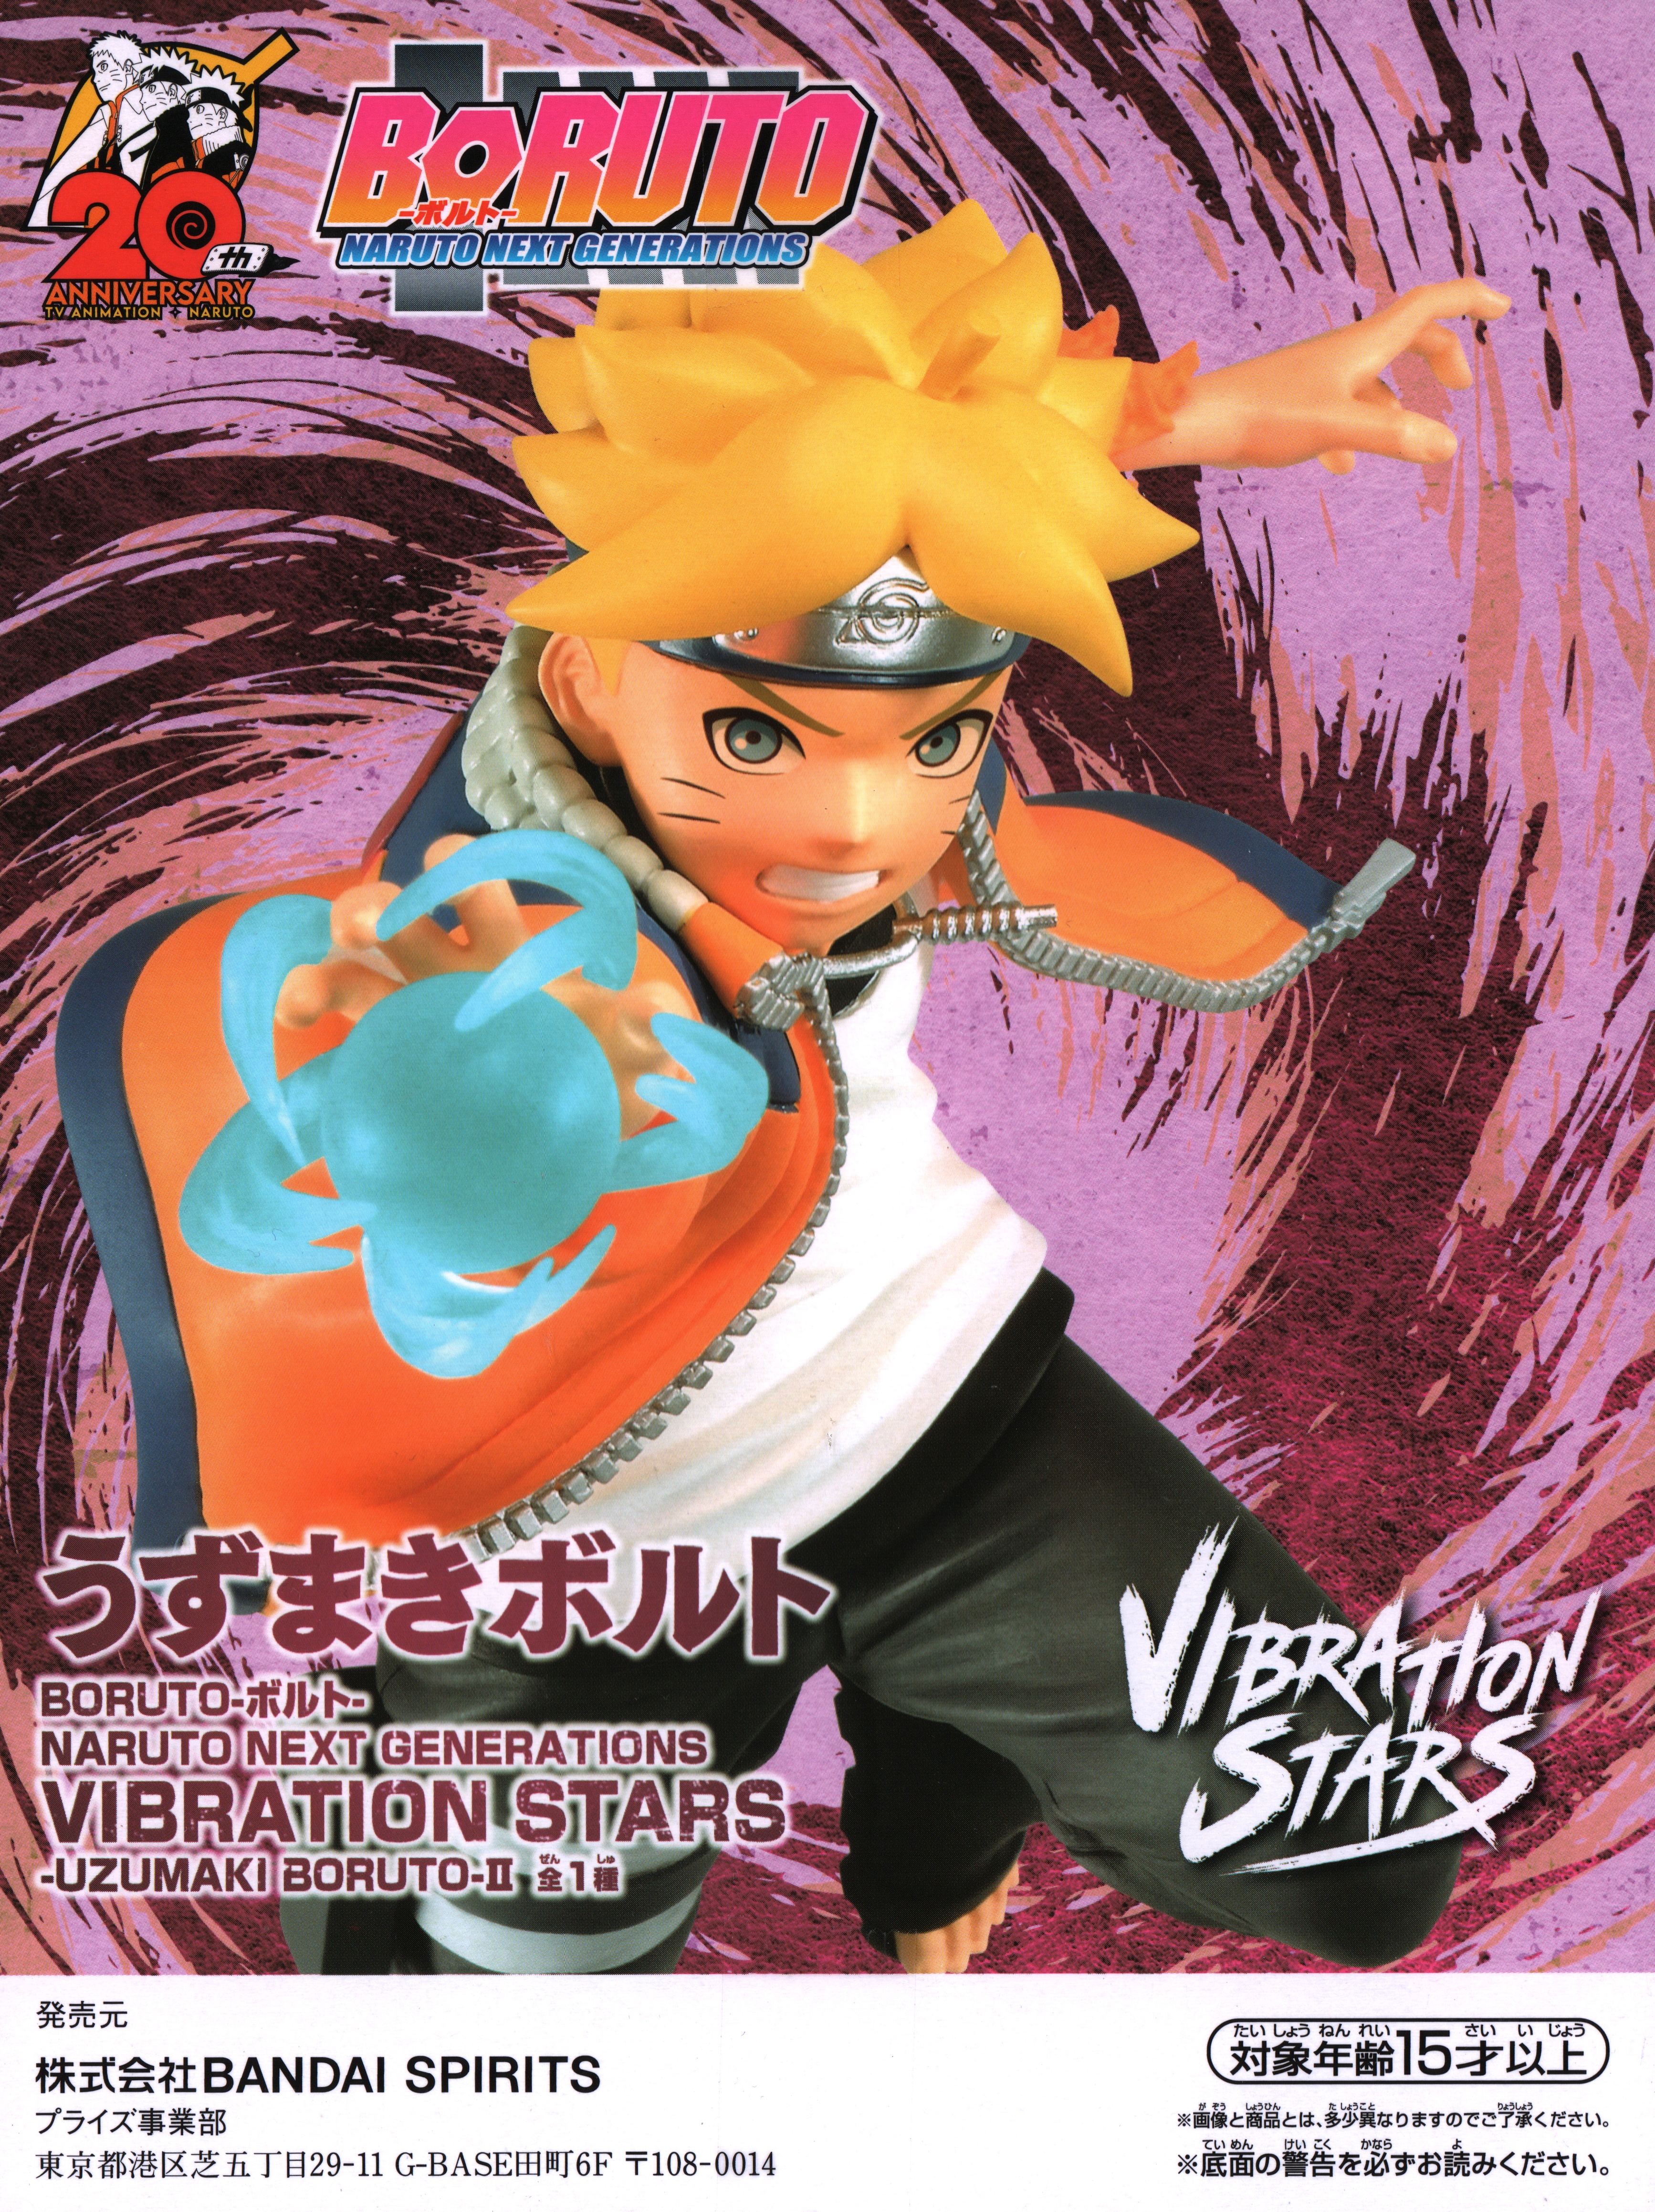 Little Buddy Llc Boruto Naruto Next Generations Vibration Stars